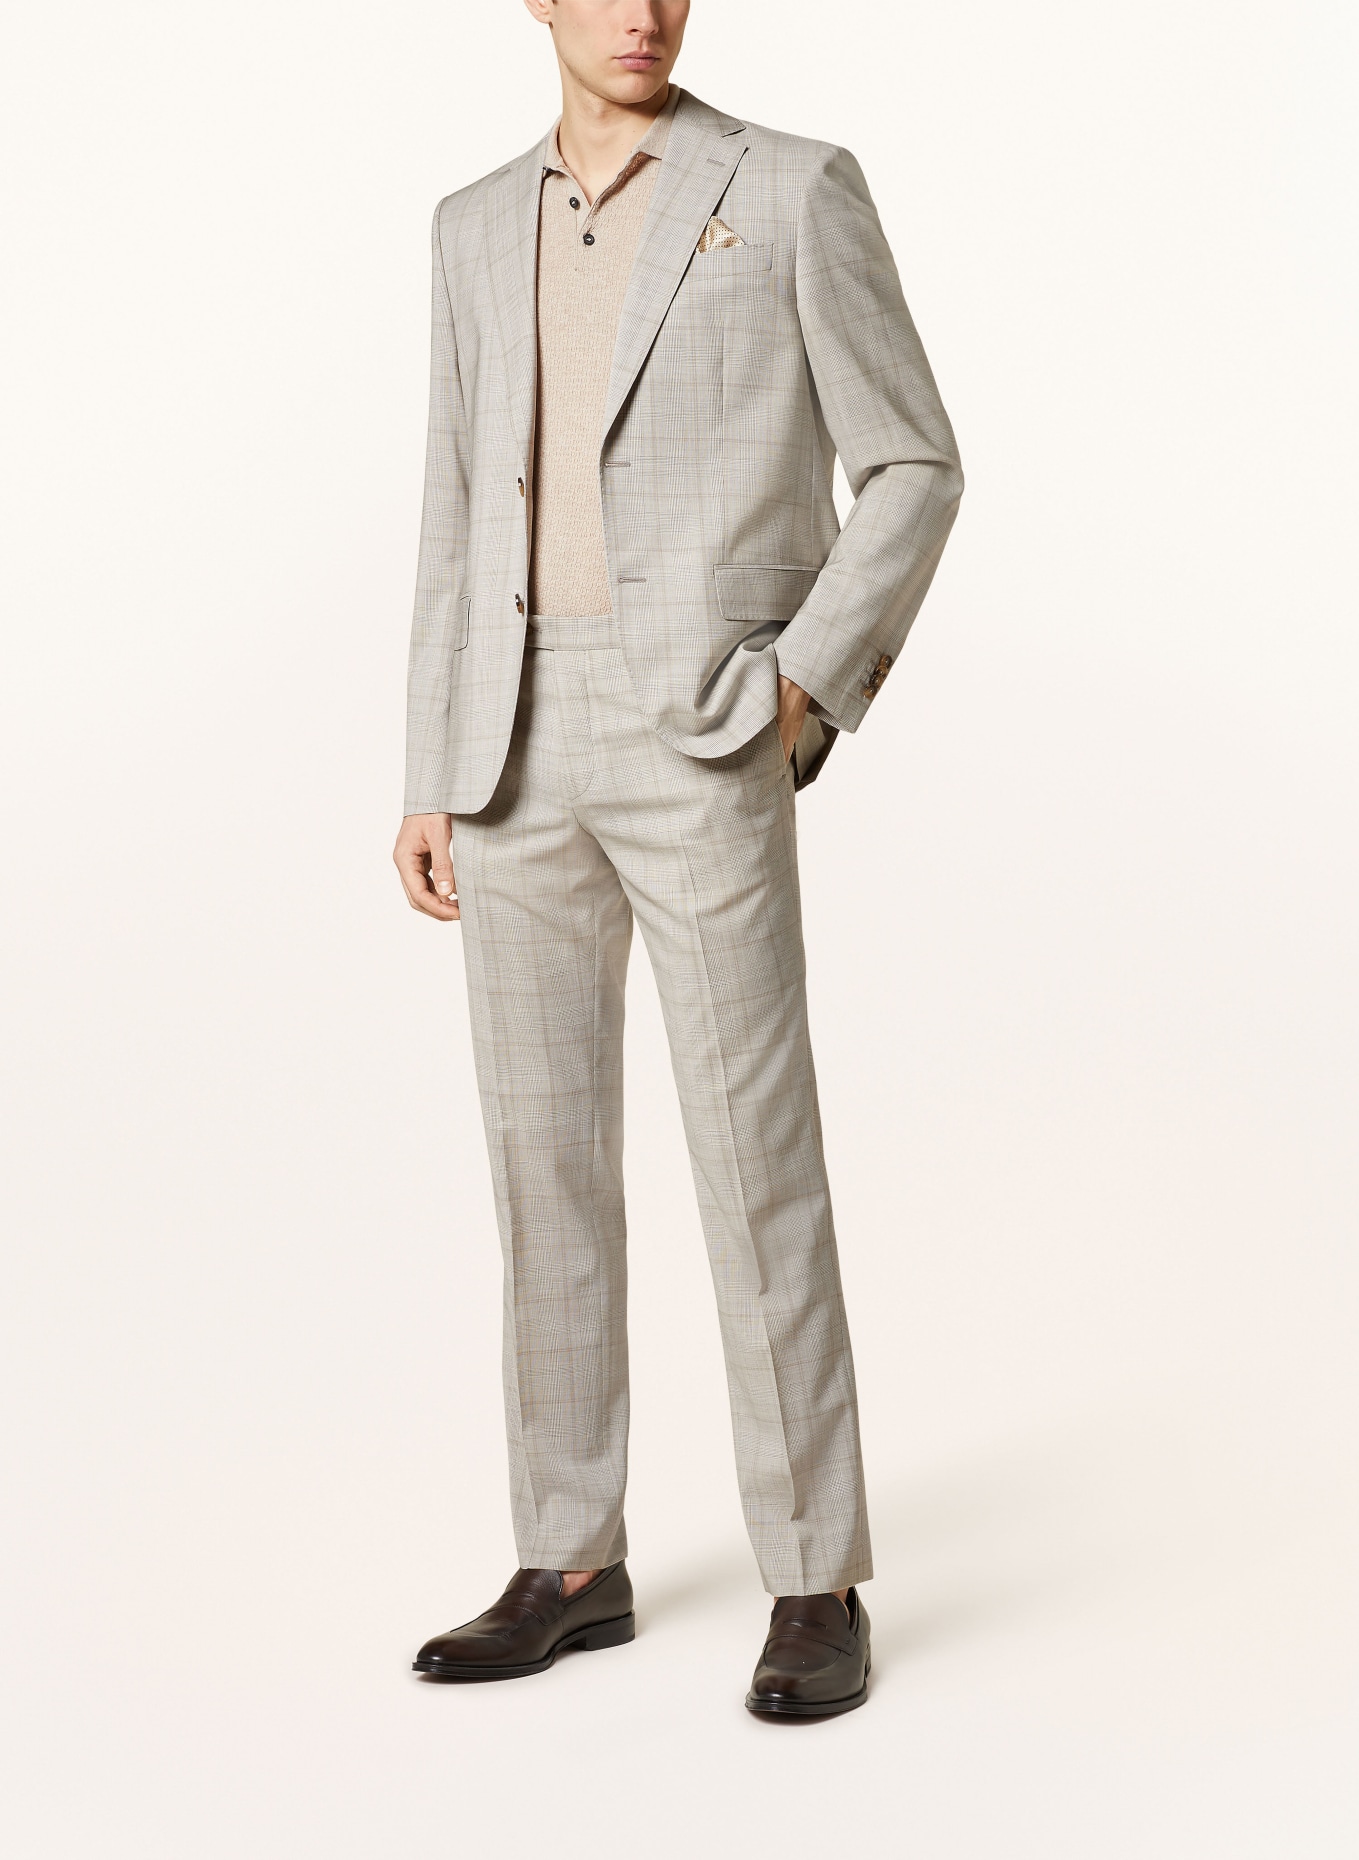 SAND COPENHAGEN Suit trousers CRAIG classic fit, Color: 220 hellbeige (Image 2)